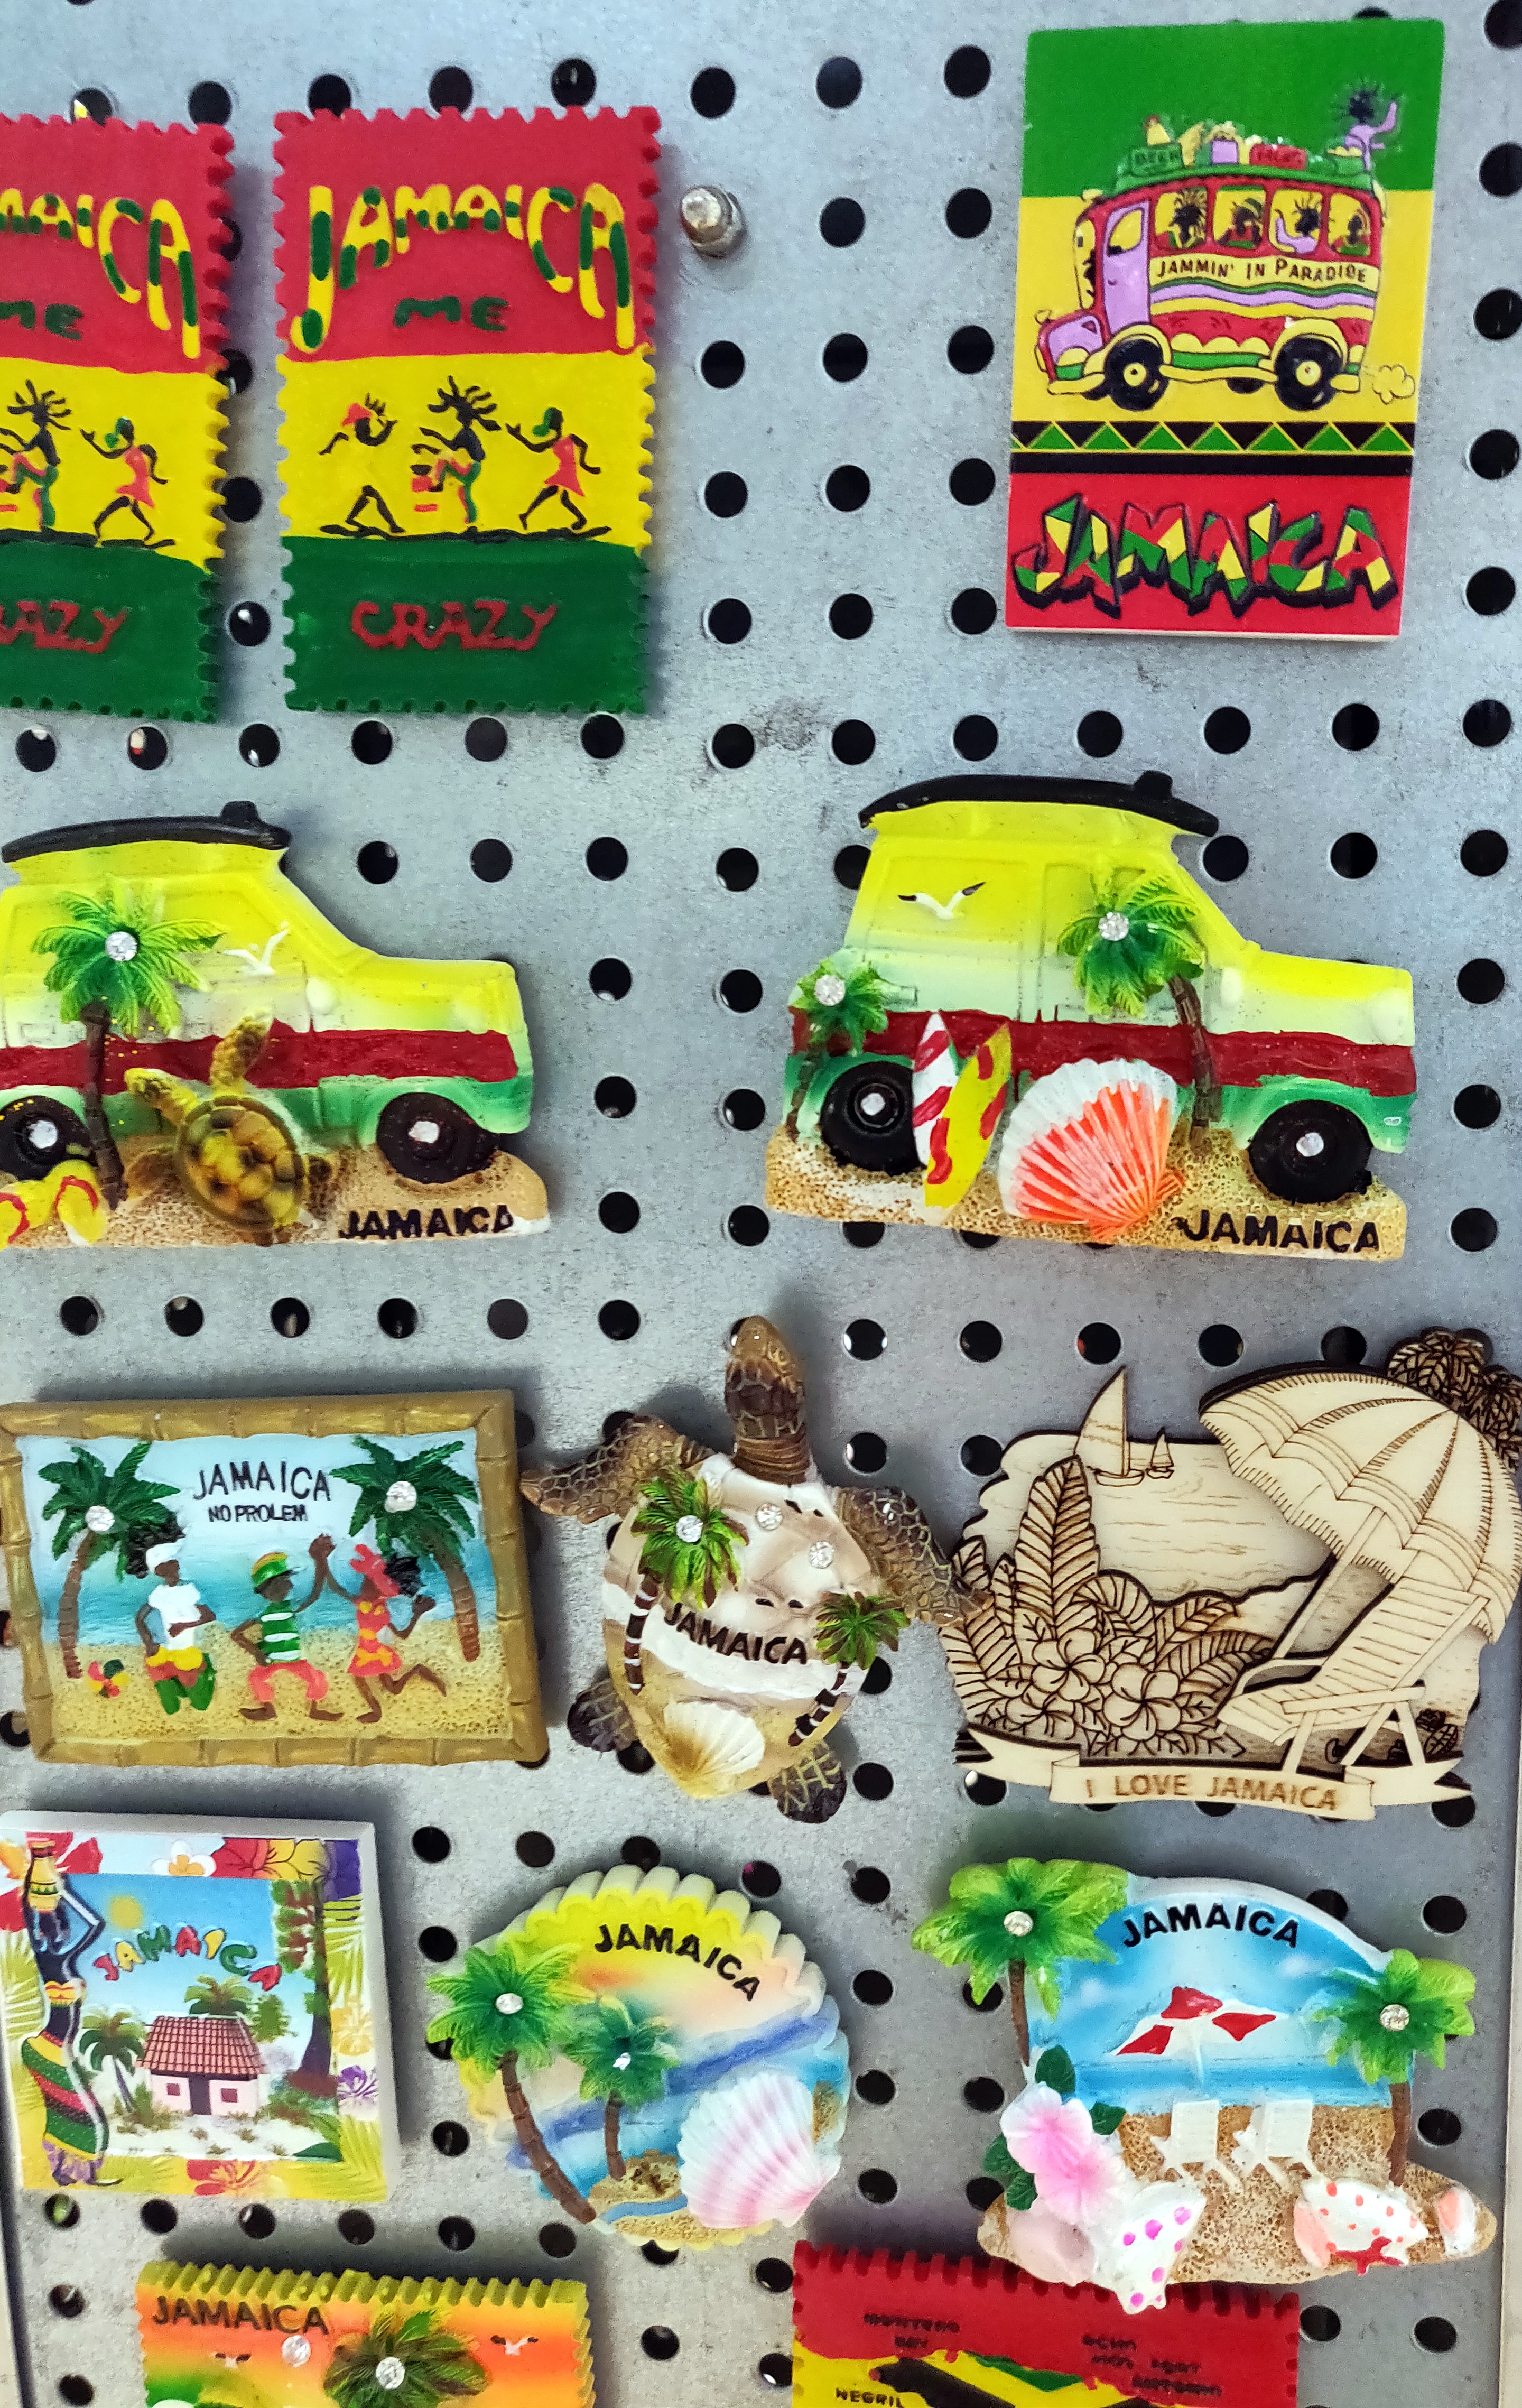 Jamaican souvenirs